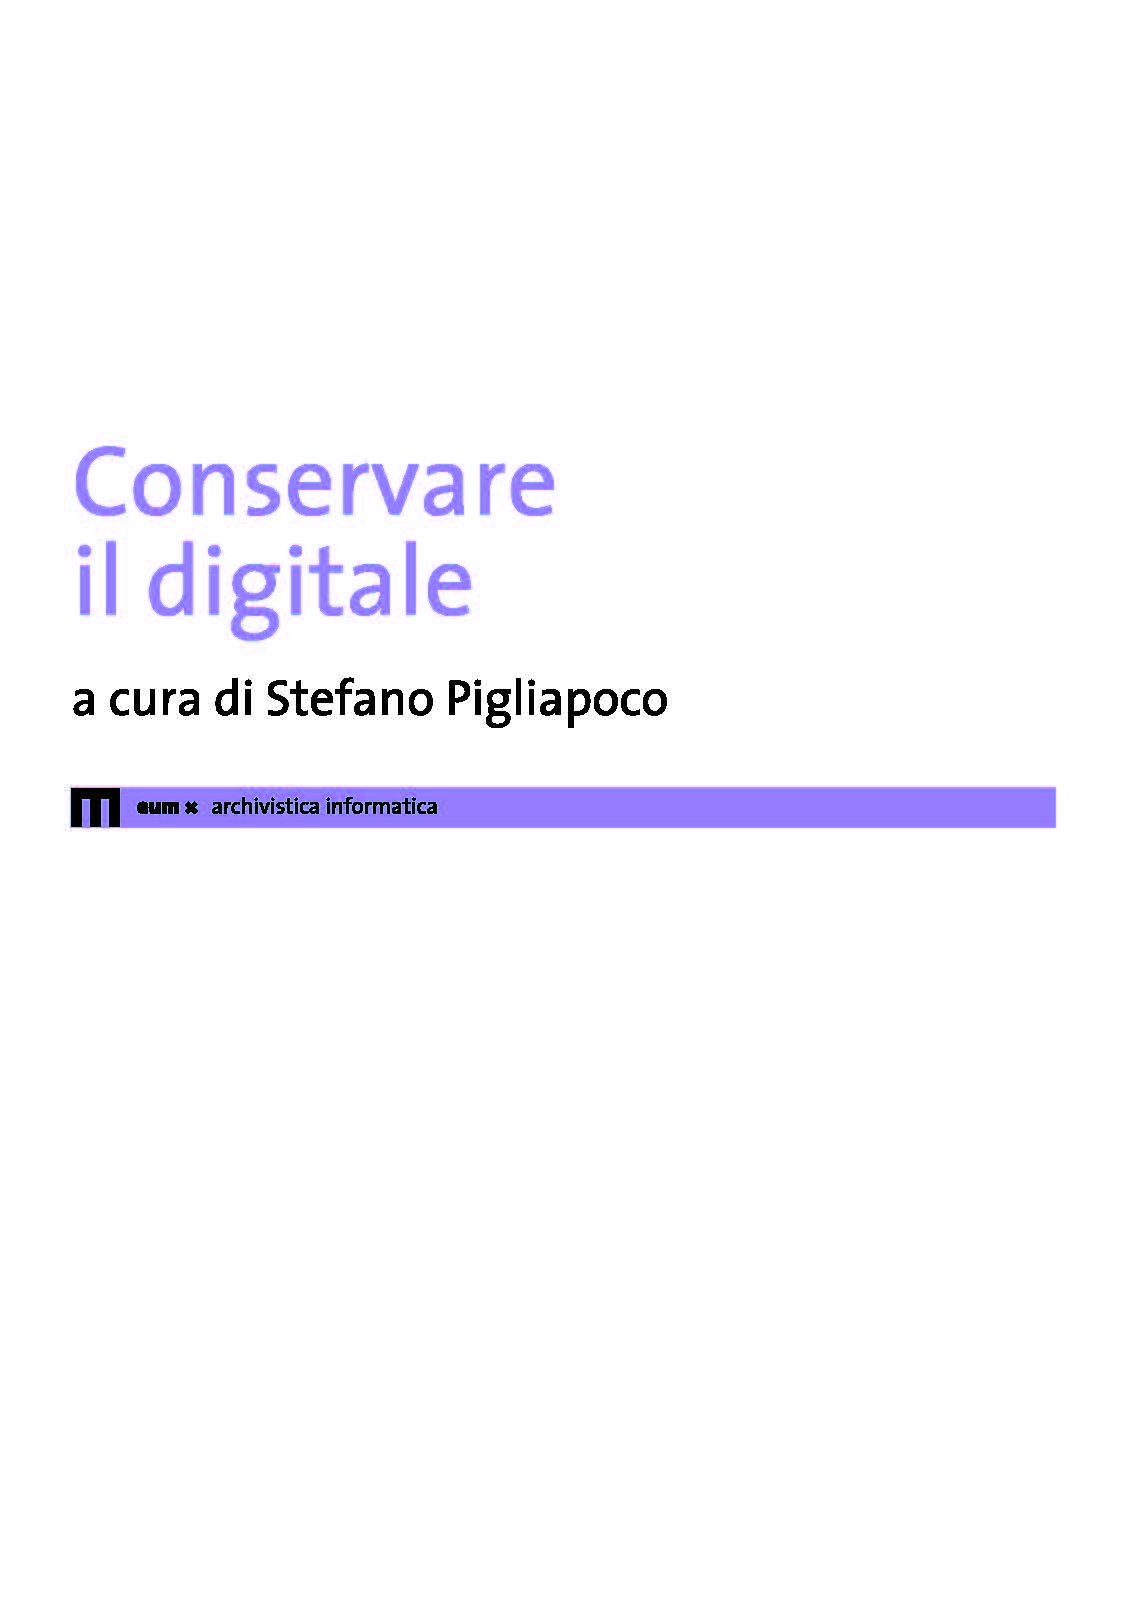 Conservare il digitale